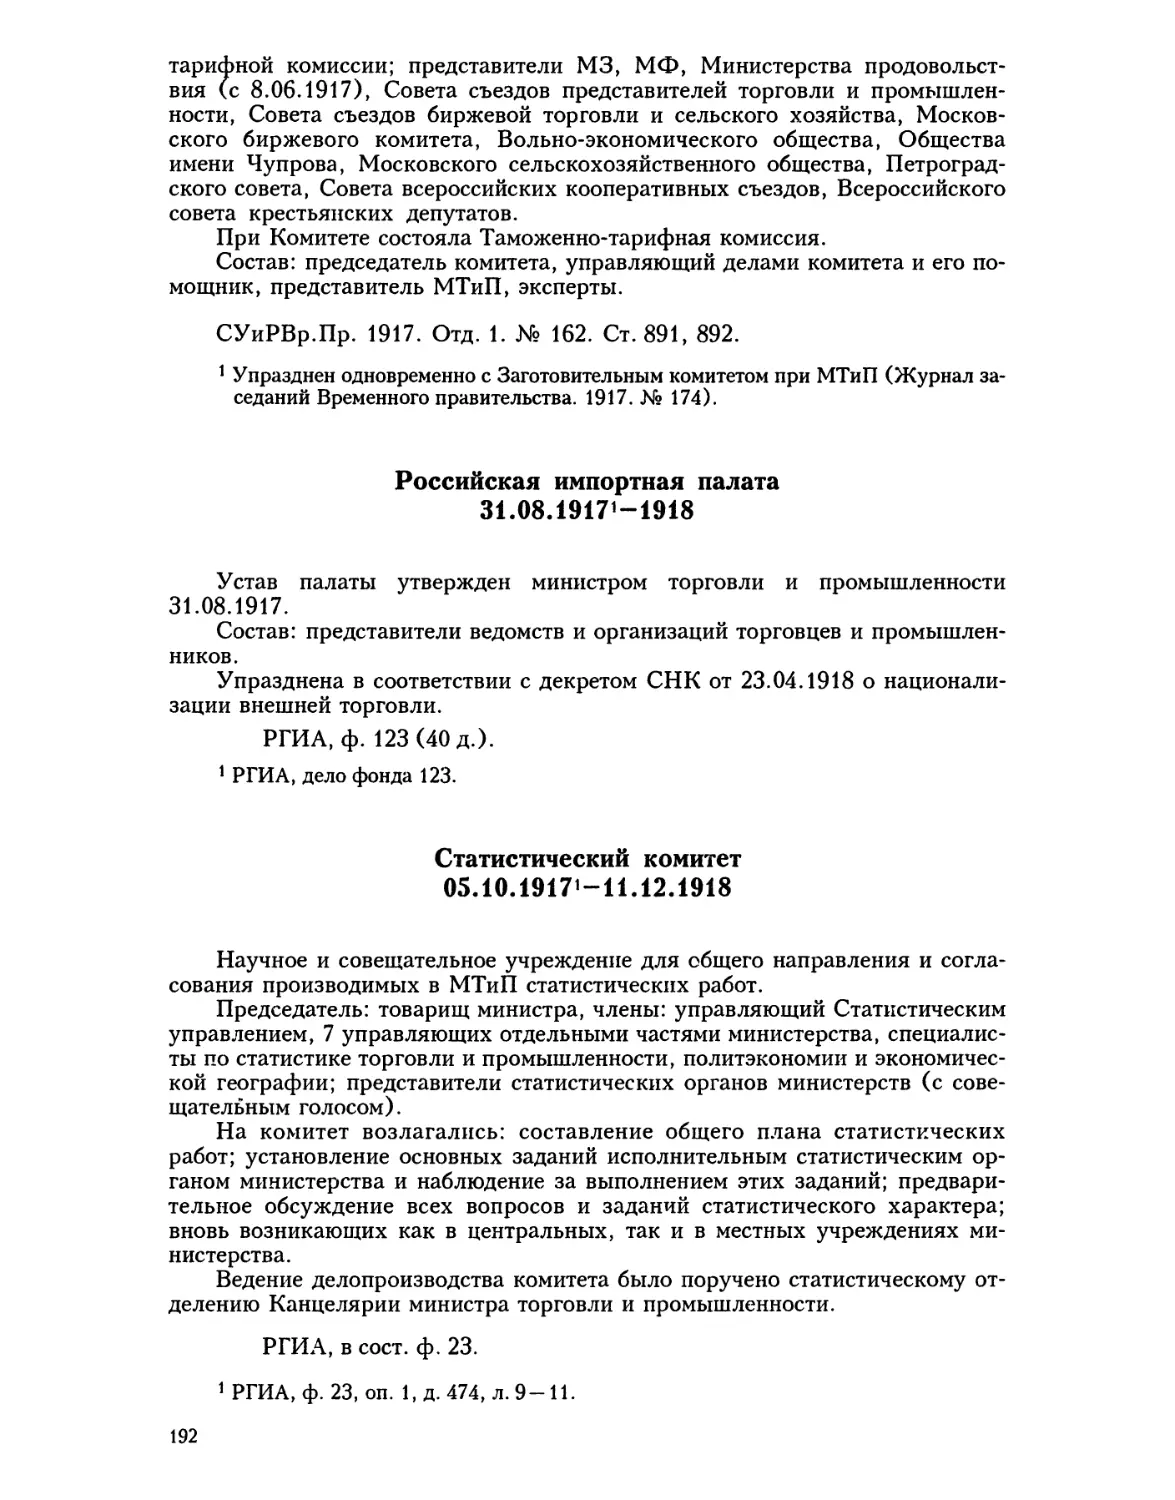 Российская импортная палата
Статистический комитет